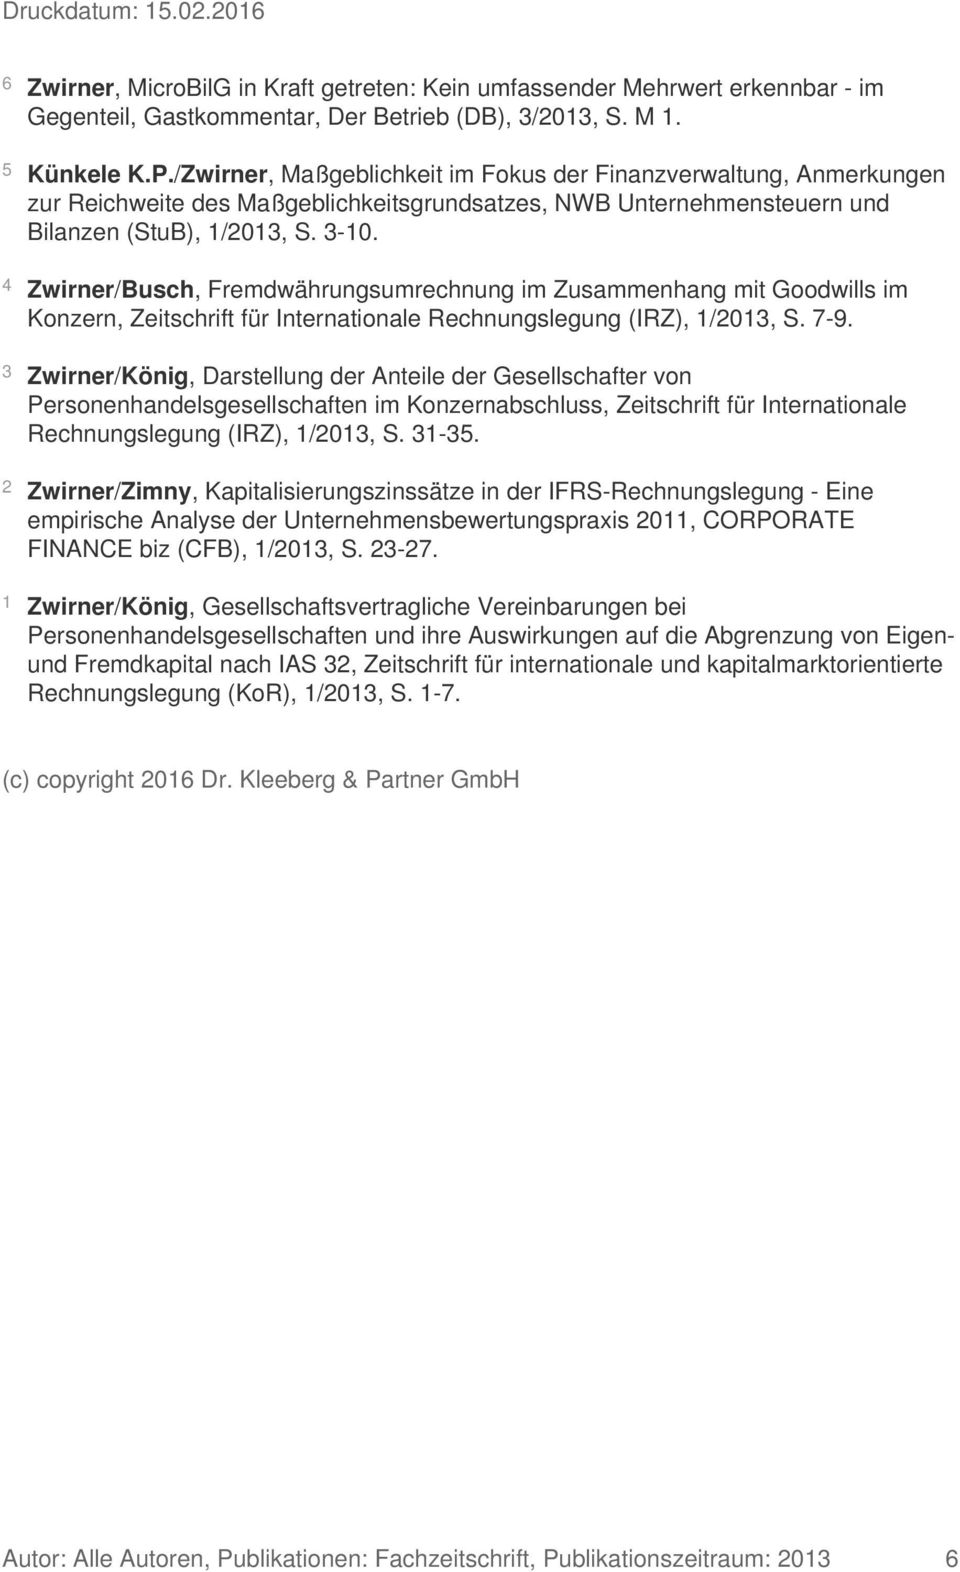 4 Zwirner/Busch, Fremdwährungsumrechnung im Zusammenhang mit Goodwills im Konzern, Zeitschrift für Internationale Rechnungslegung (IRZ), 1/2013, S. 7-9.